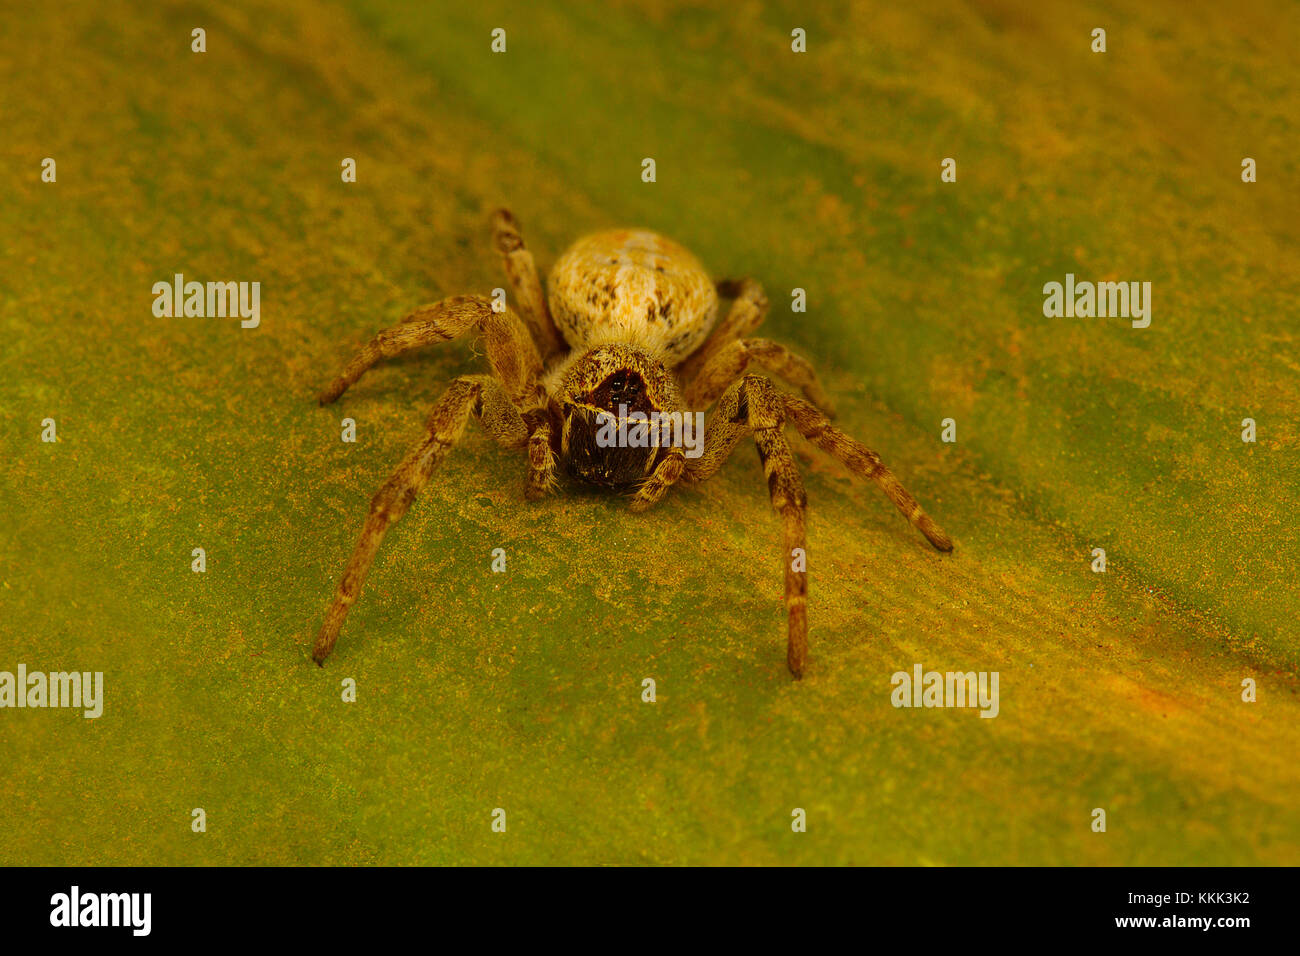 Ragno sociale del genere Stegodyphus che vive in una colonia. Questi sono gli unici ragni sociali conosciuti. Foto Stock